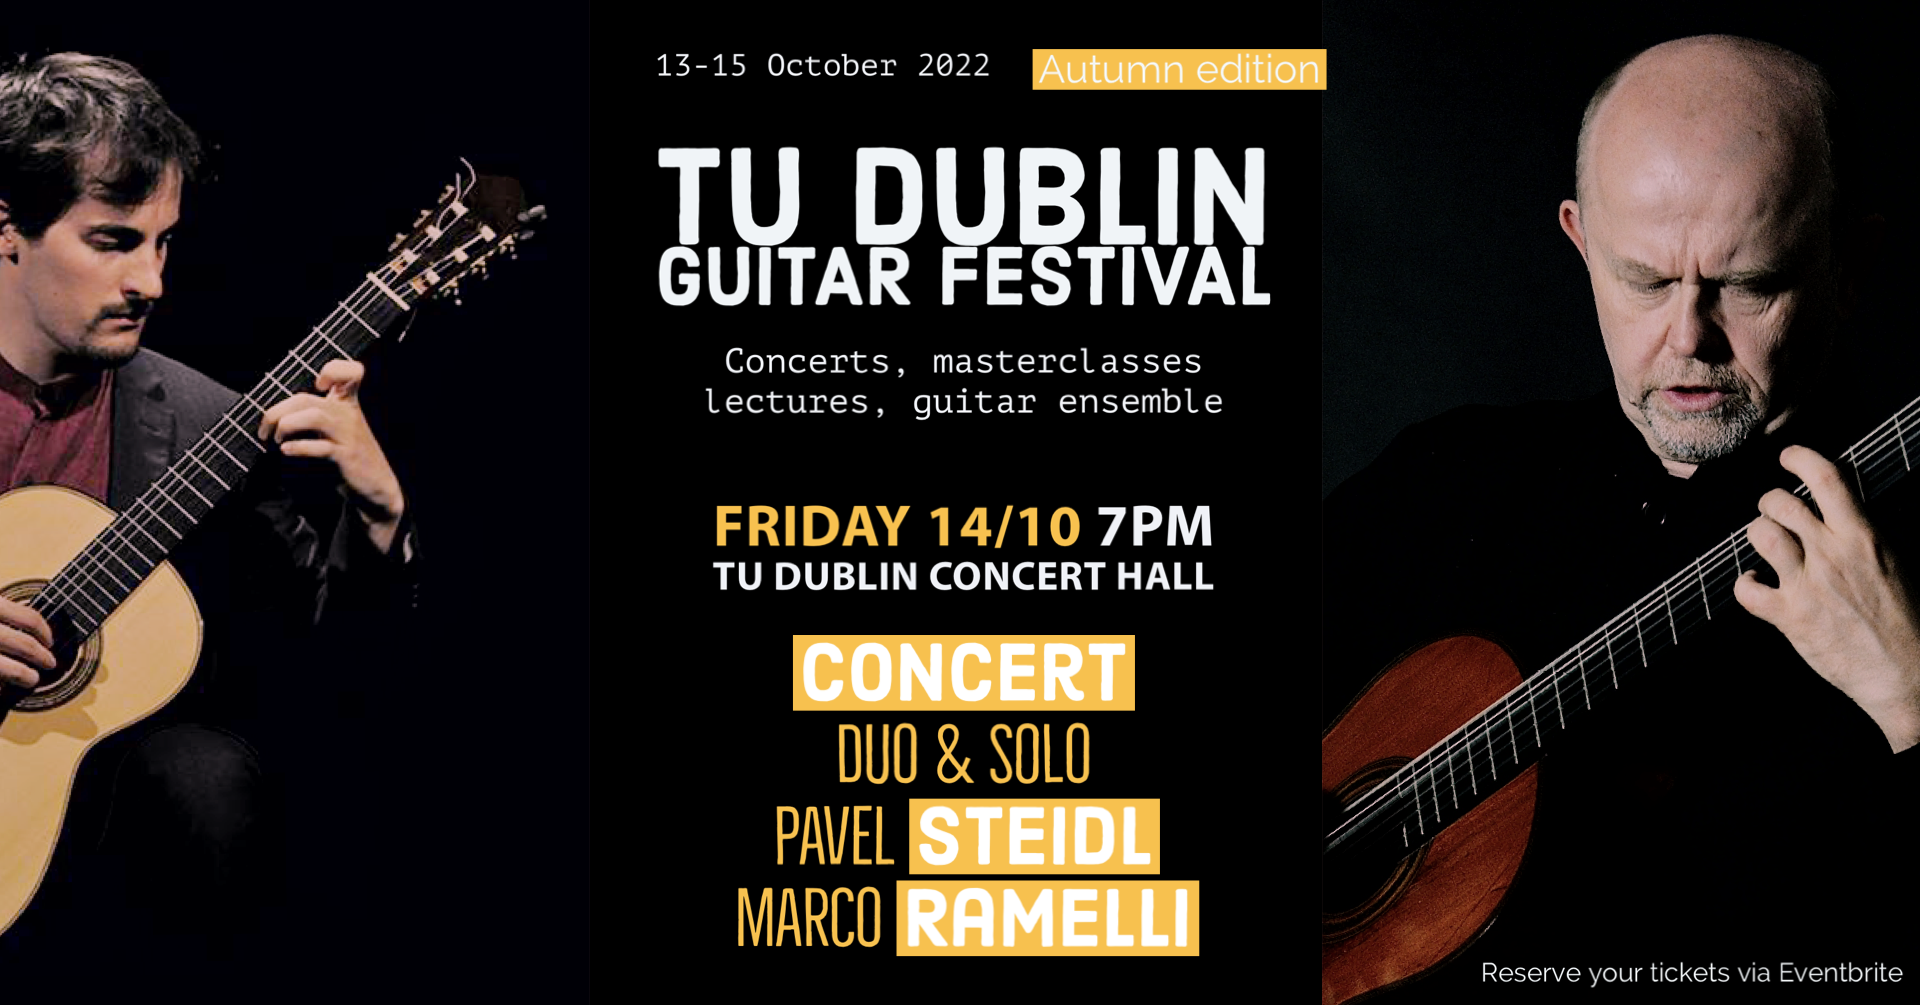 Image for TU Dublin Guitar Festival 13-15 October 2022